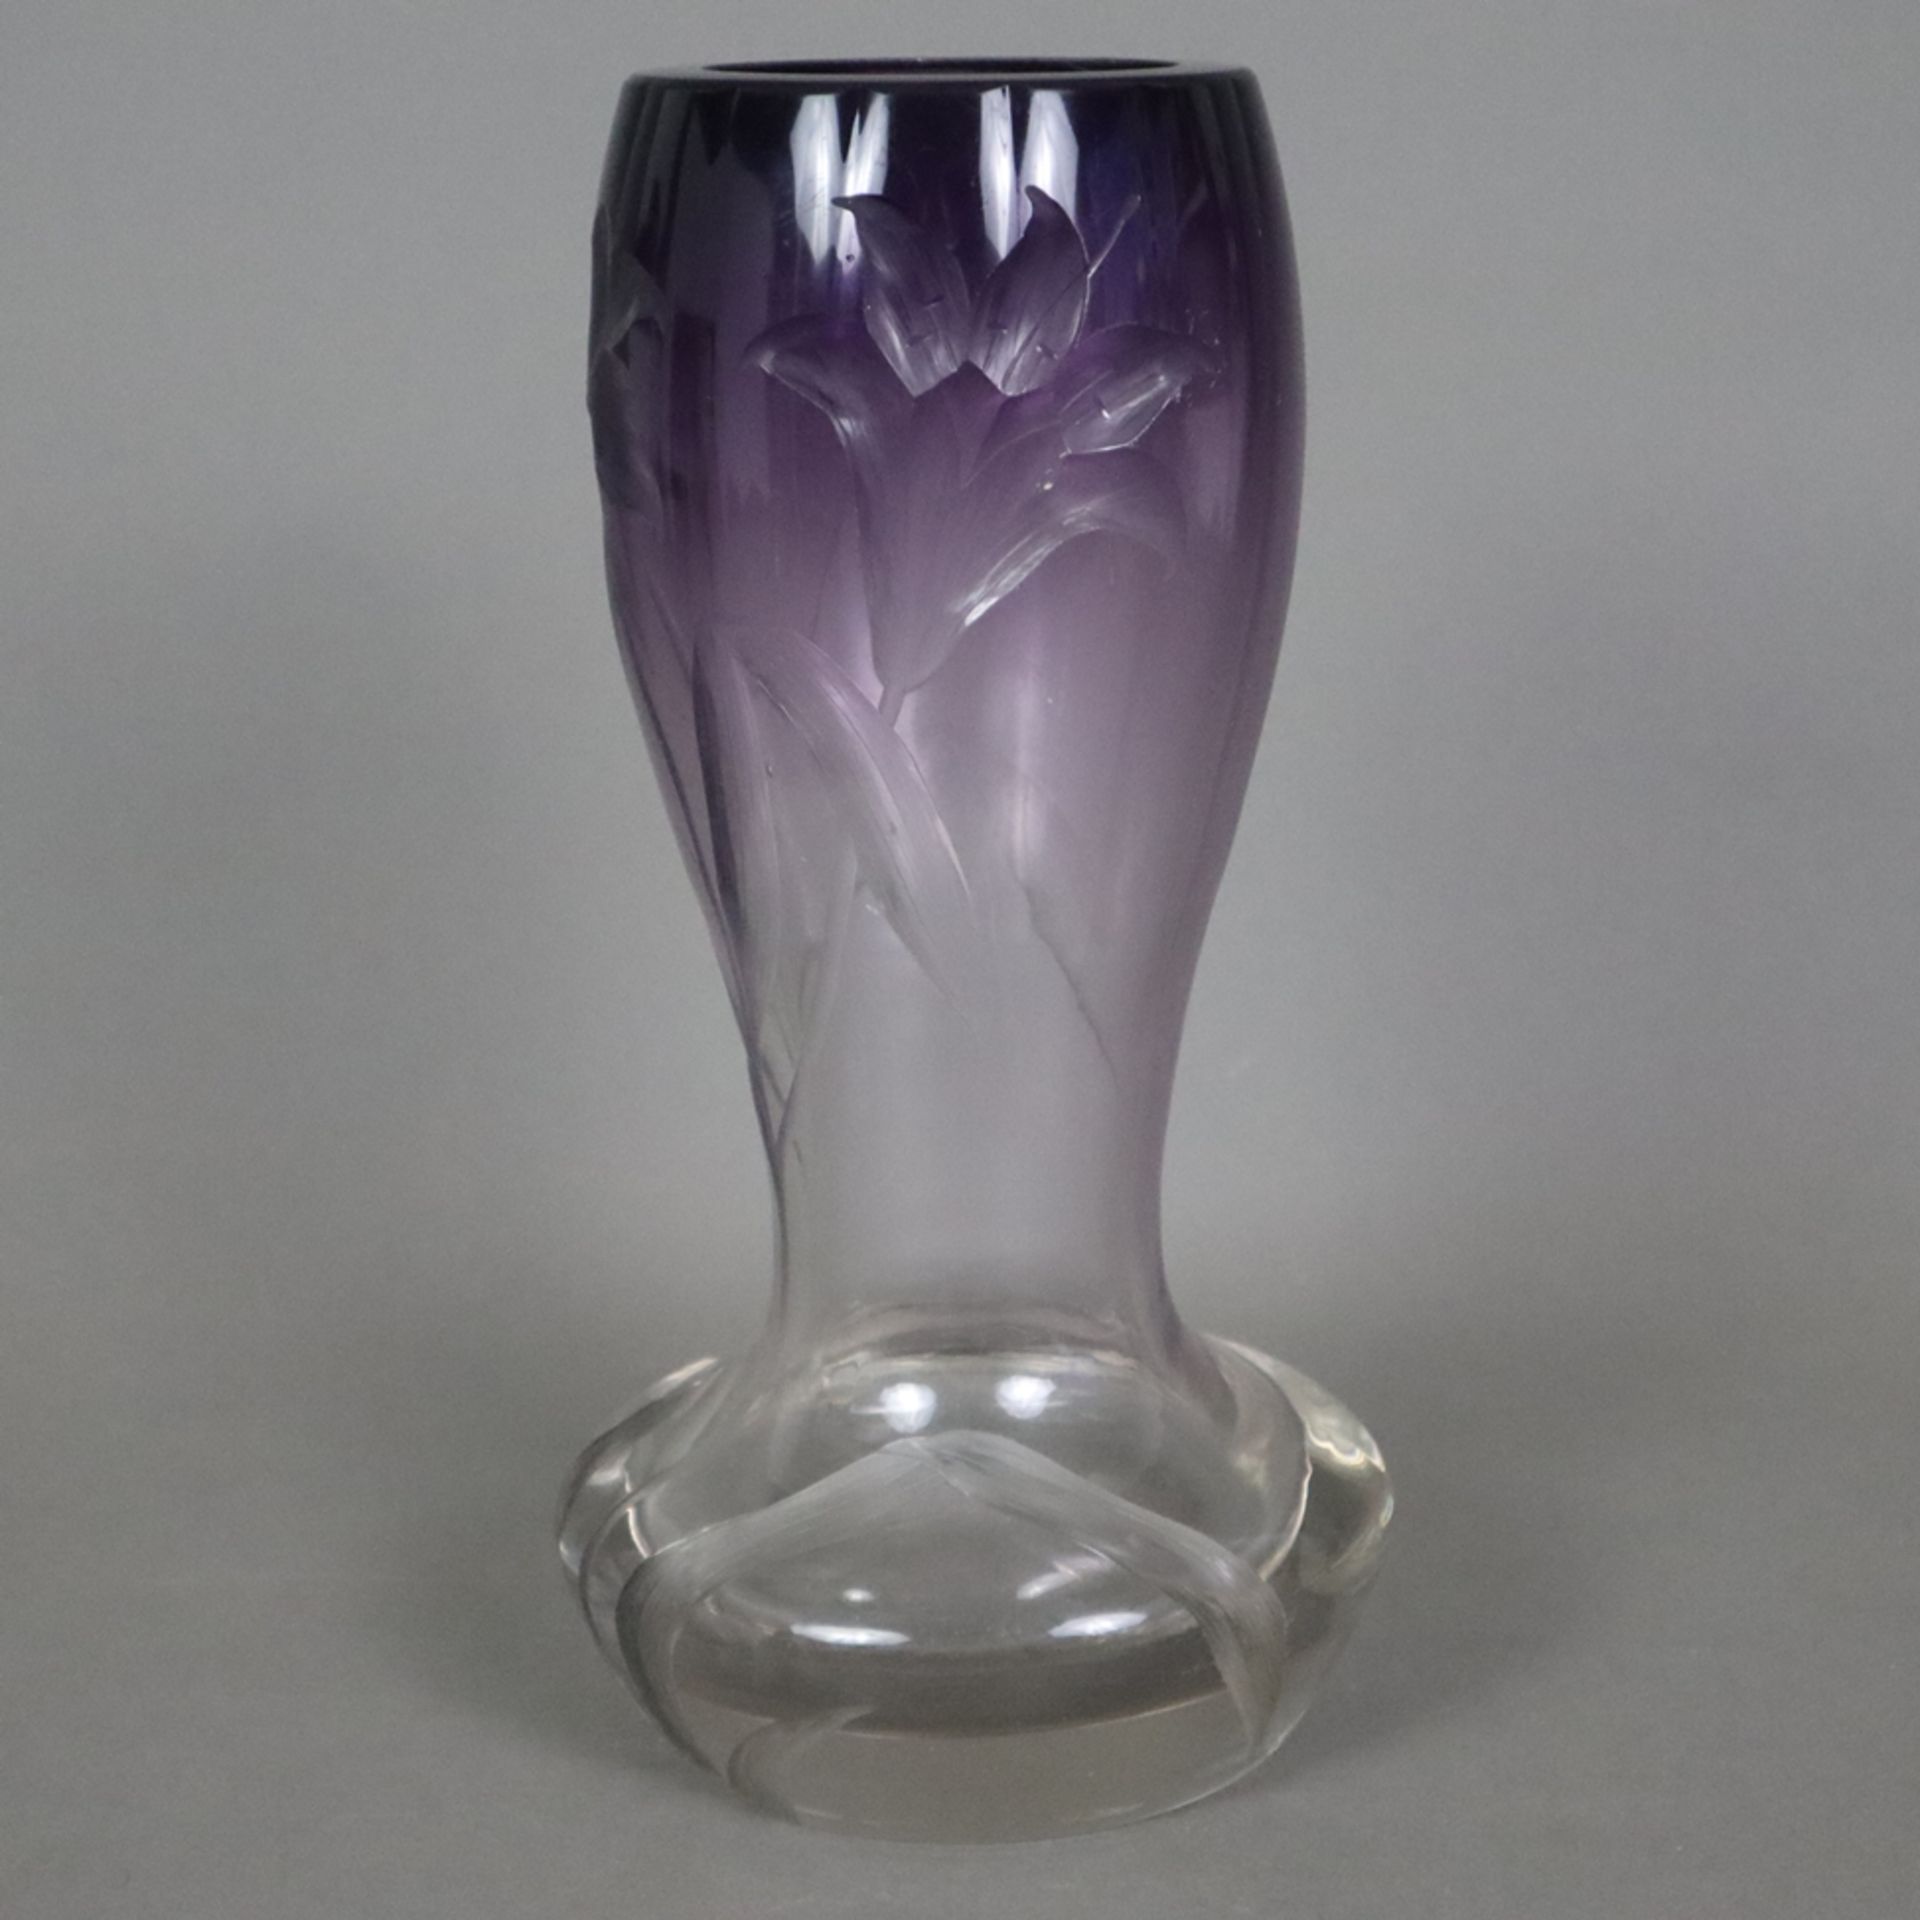 Jugendstil-Glasvase - wohl Ludwig Moser, Karlsbad, dickwandiges farbloses Glas mit violett verlaufe